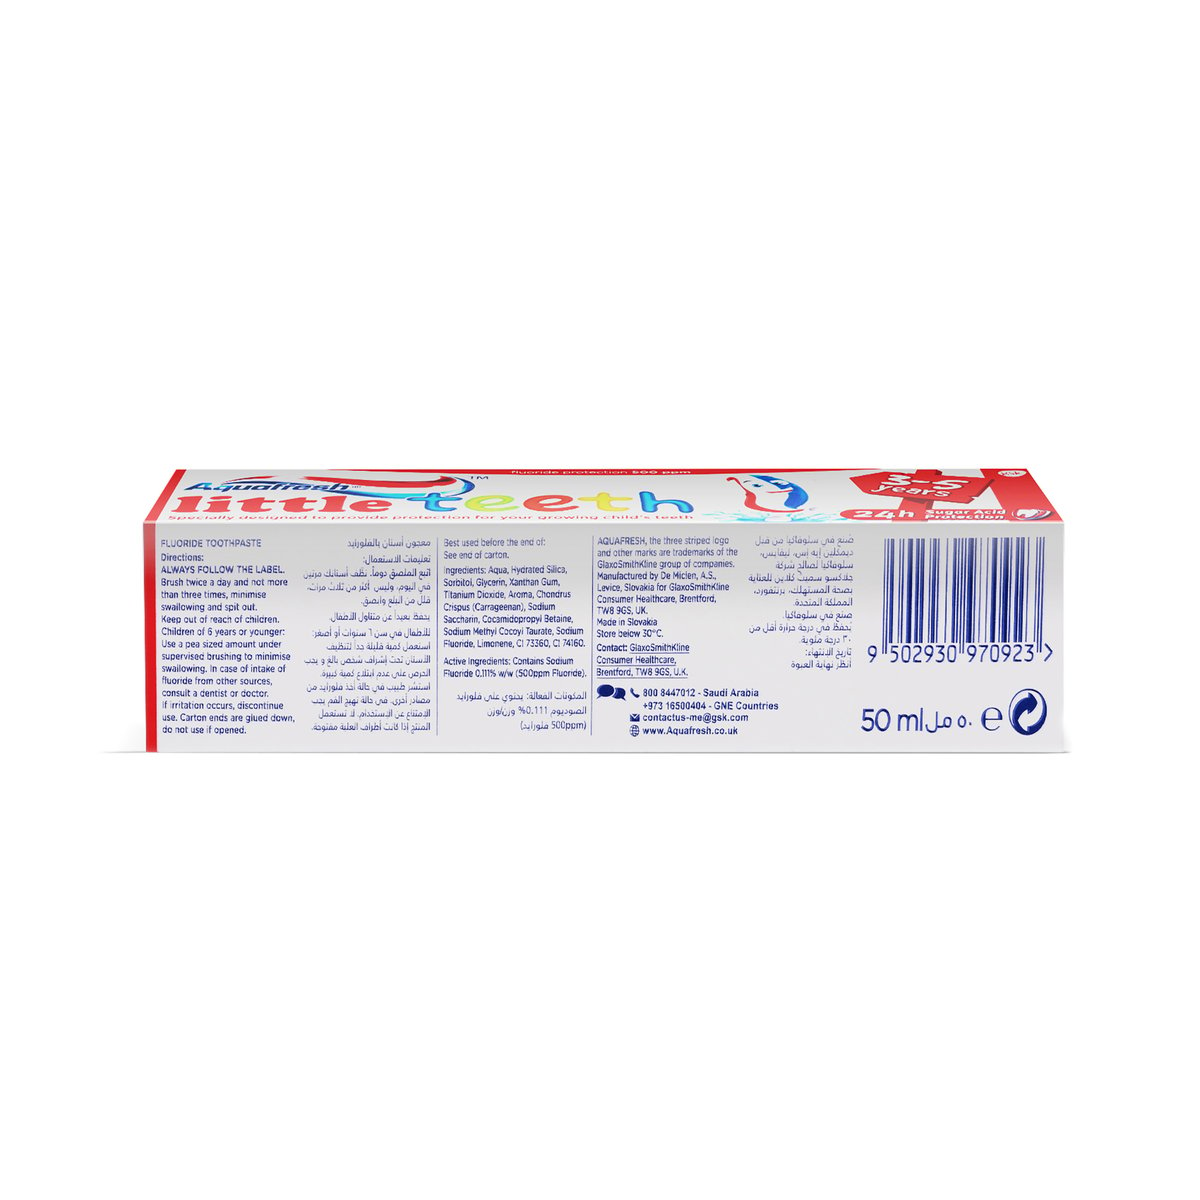 Aquafresh Little Teeth Toothpaste 50ml